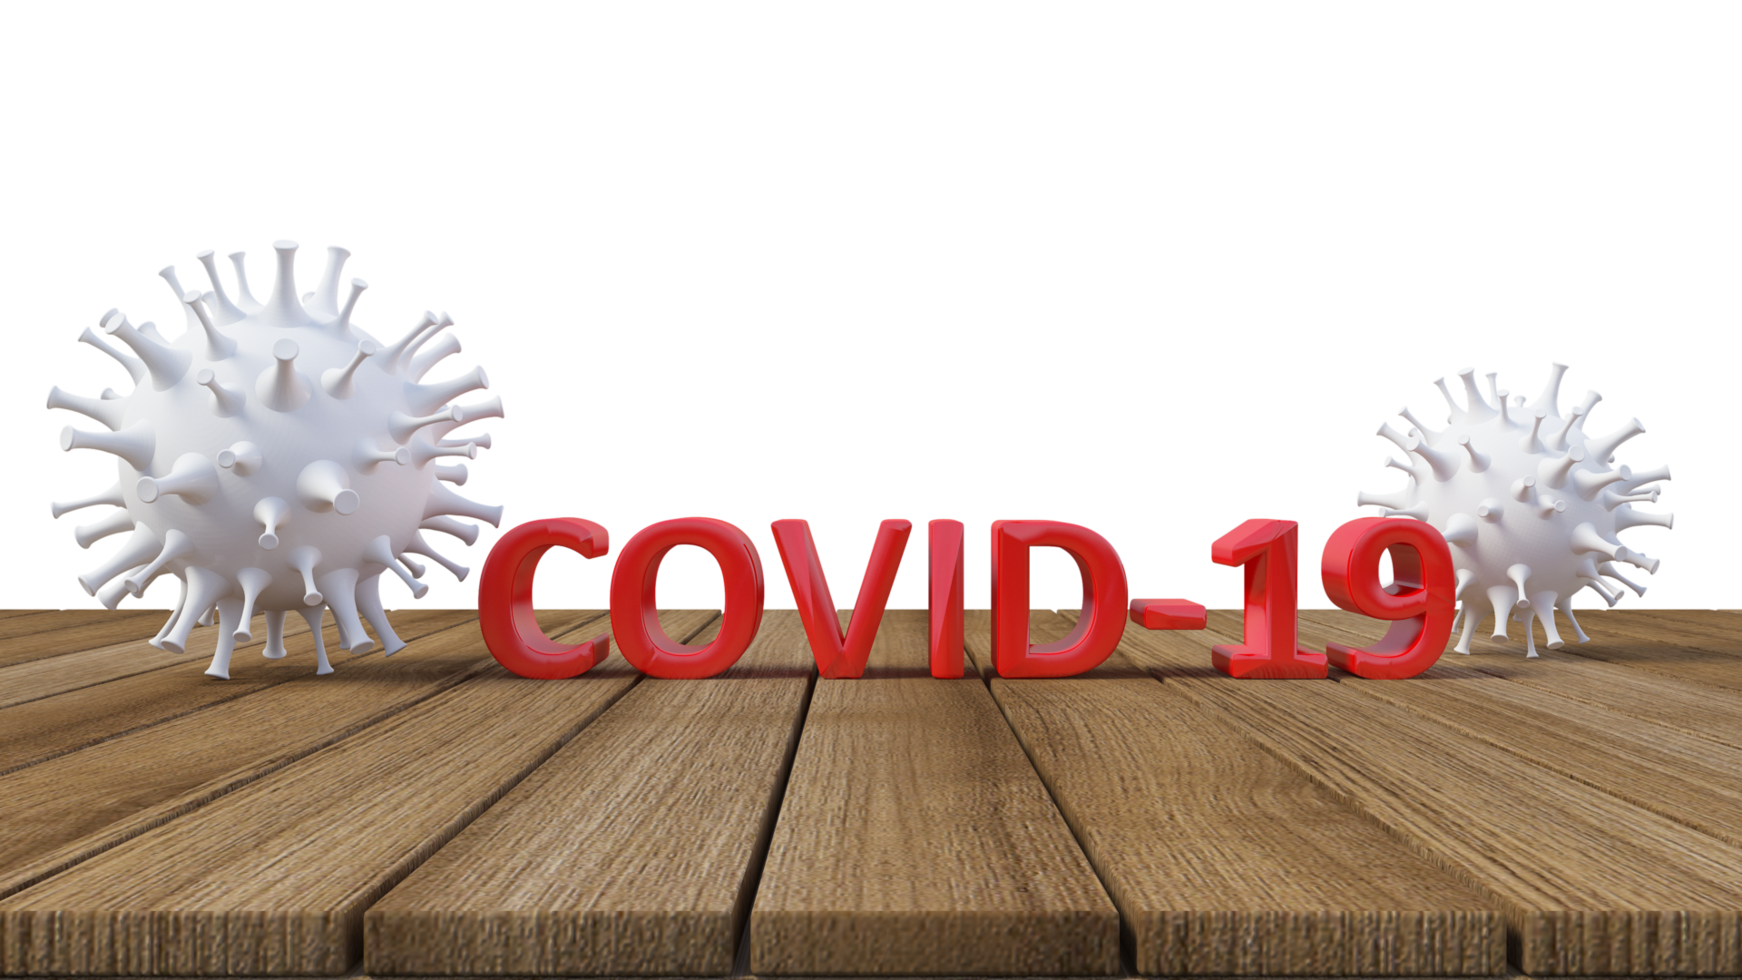 3d rendering of simple covid-19 virus model png